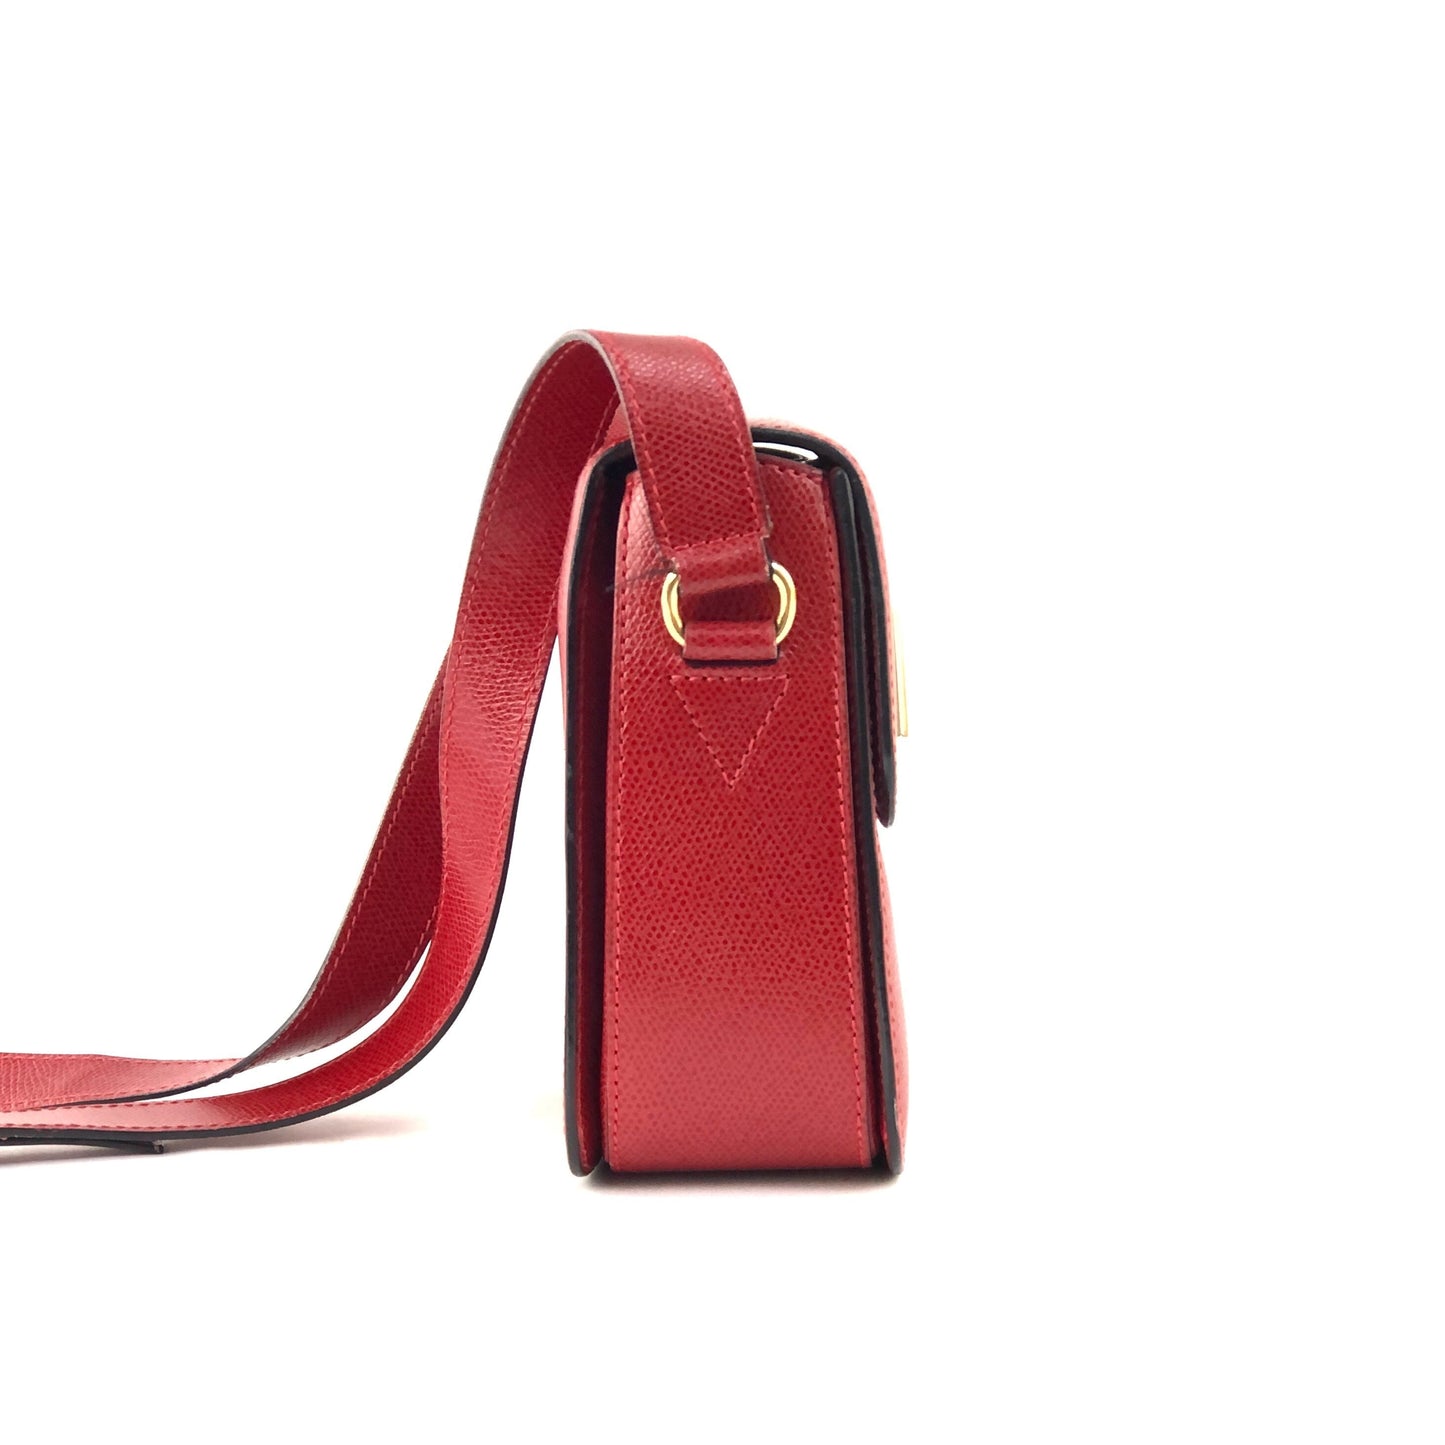 CELINE Turn Lock Leather Shoulder Bag Red vintage Old Celine 5pz5wi